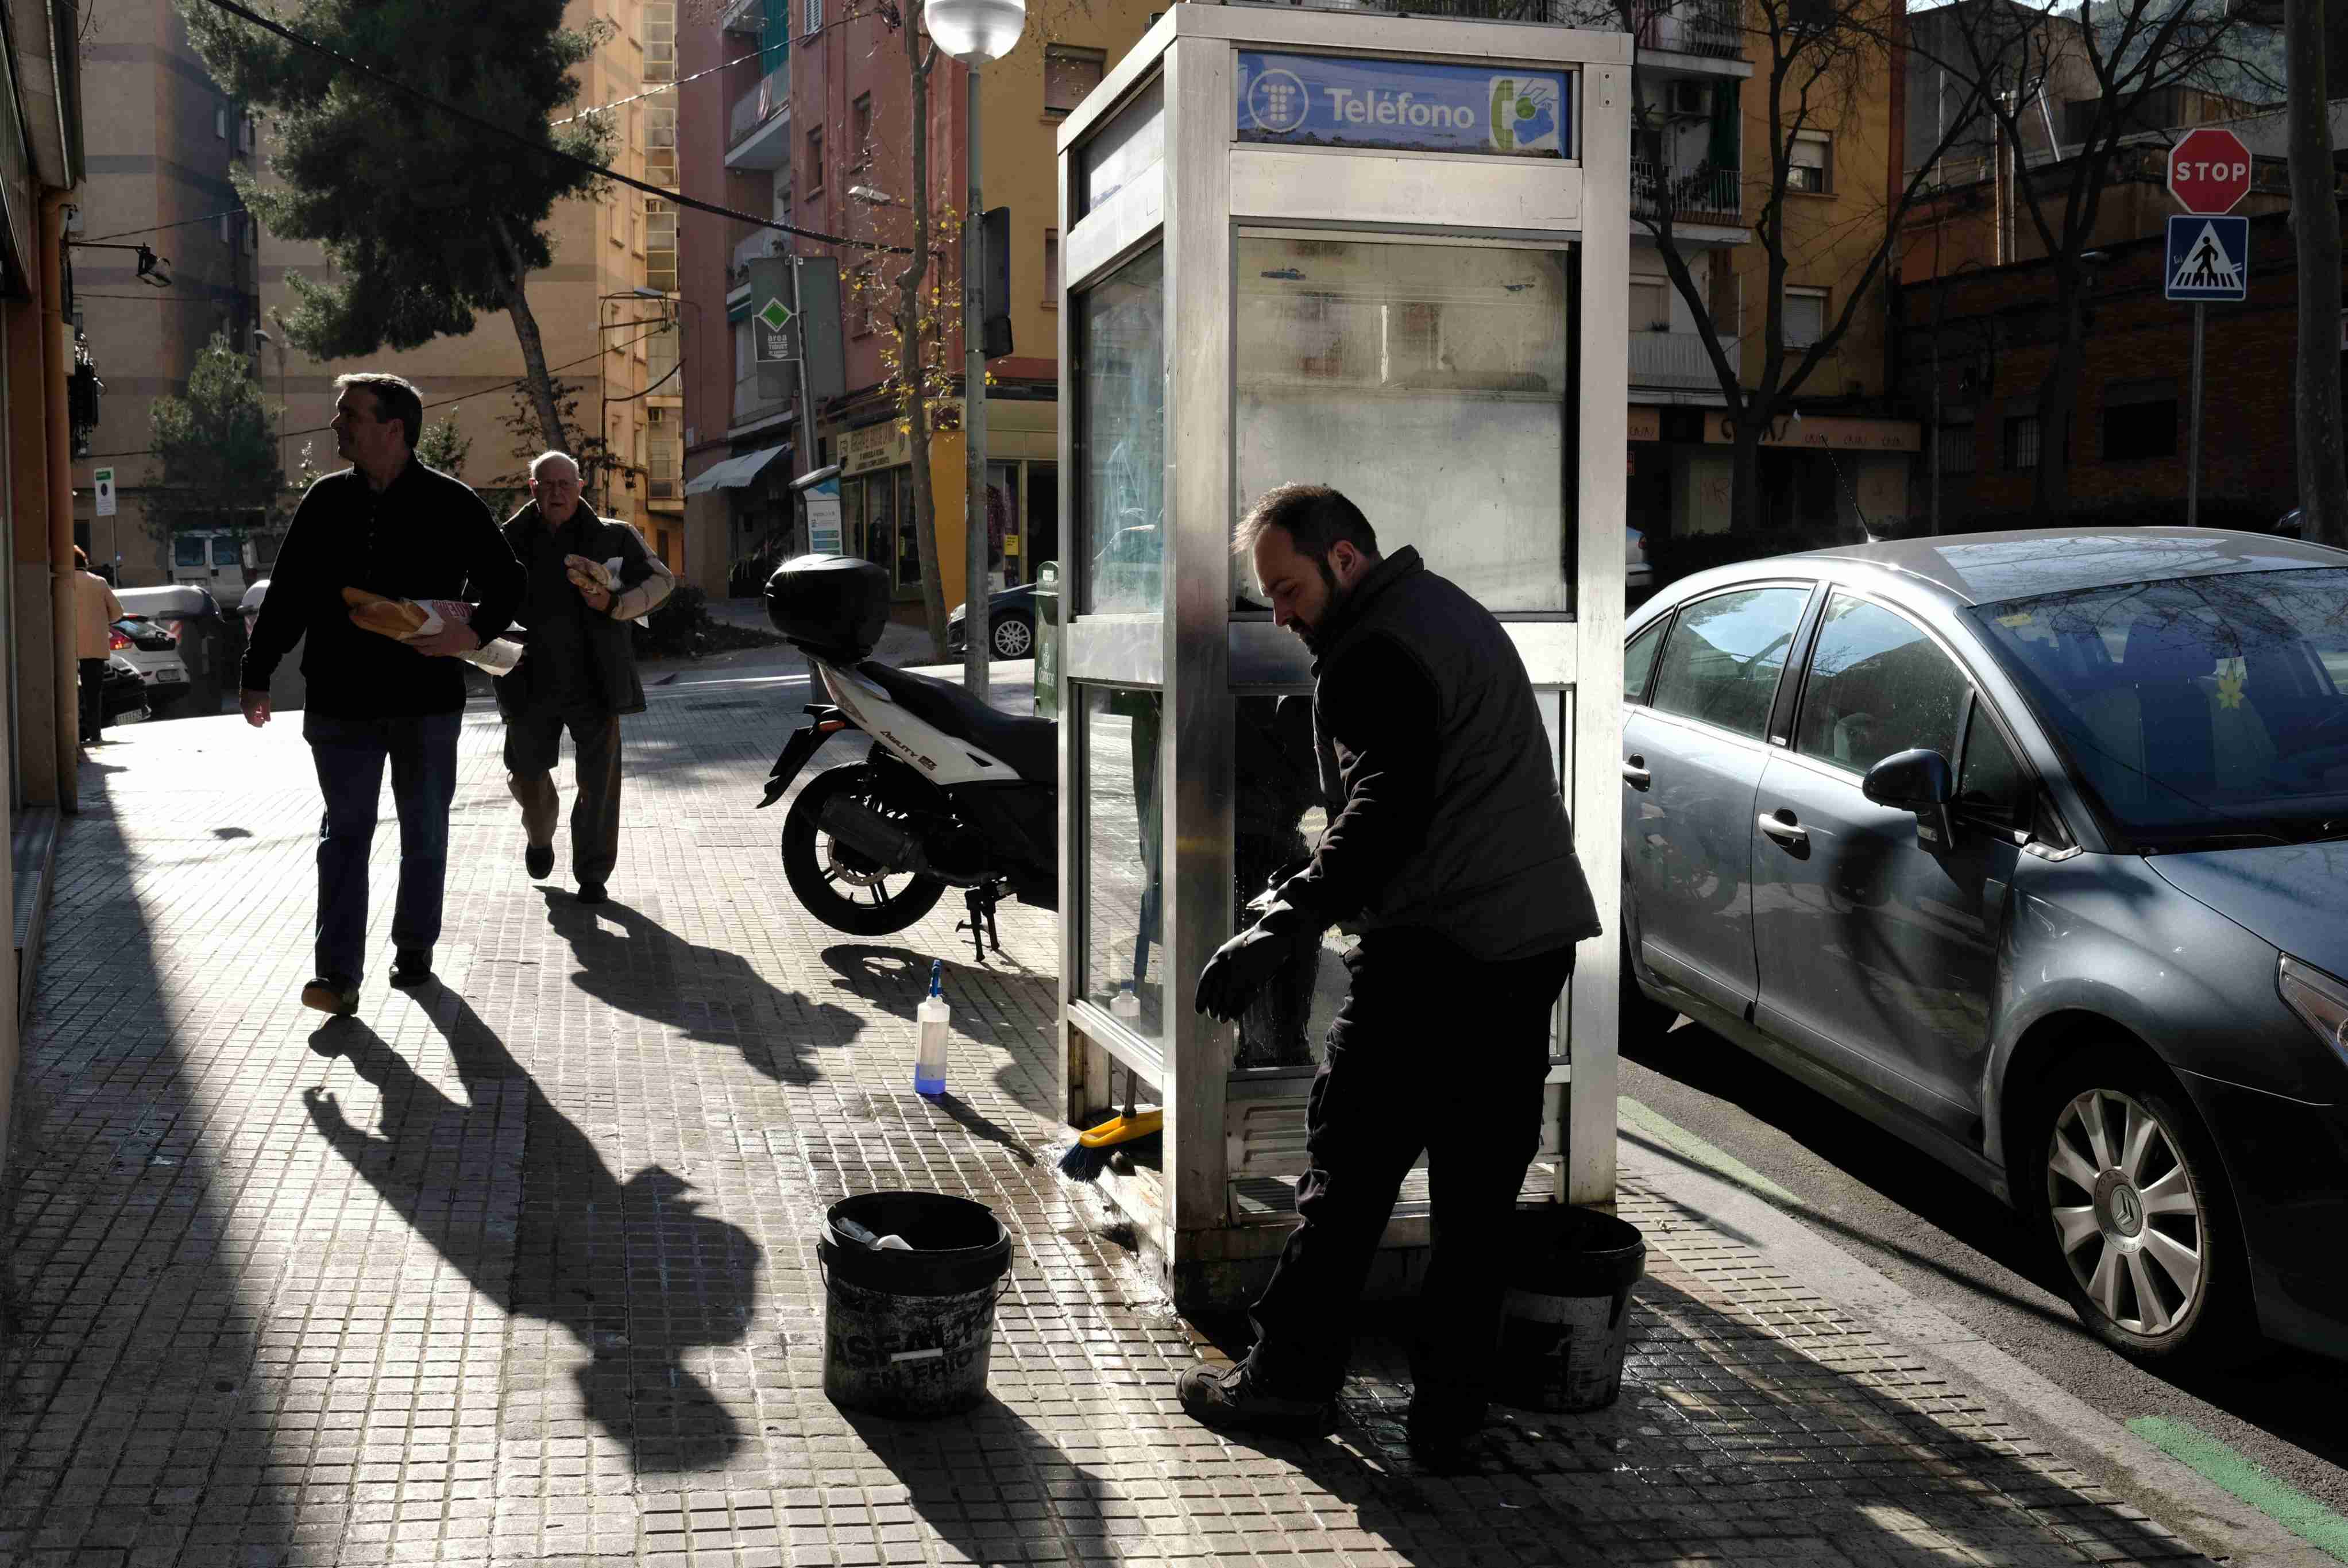 Esta es la última cabina telefónica de Barcelona